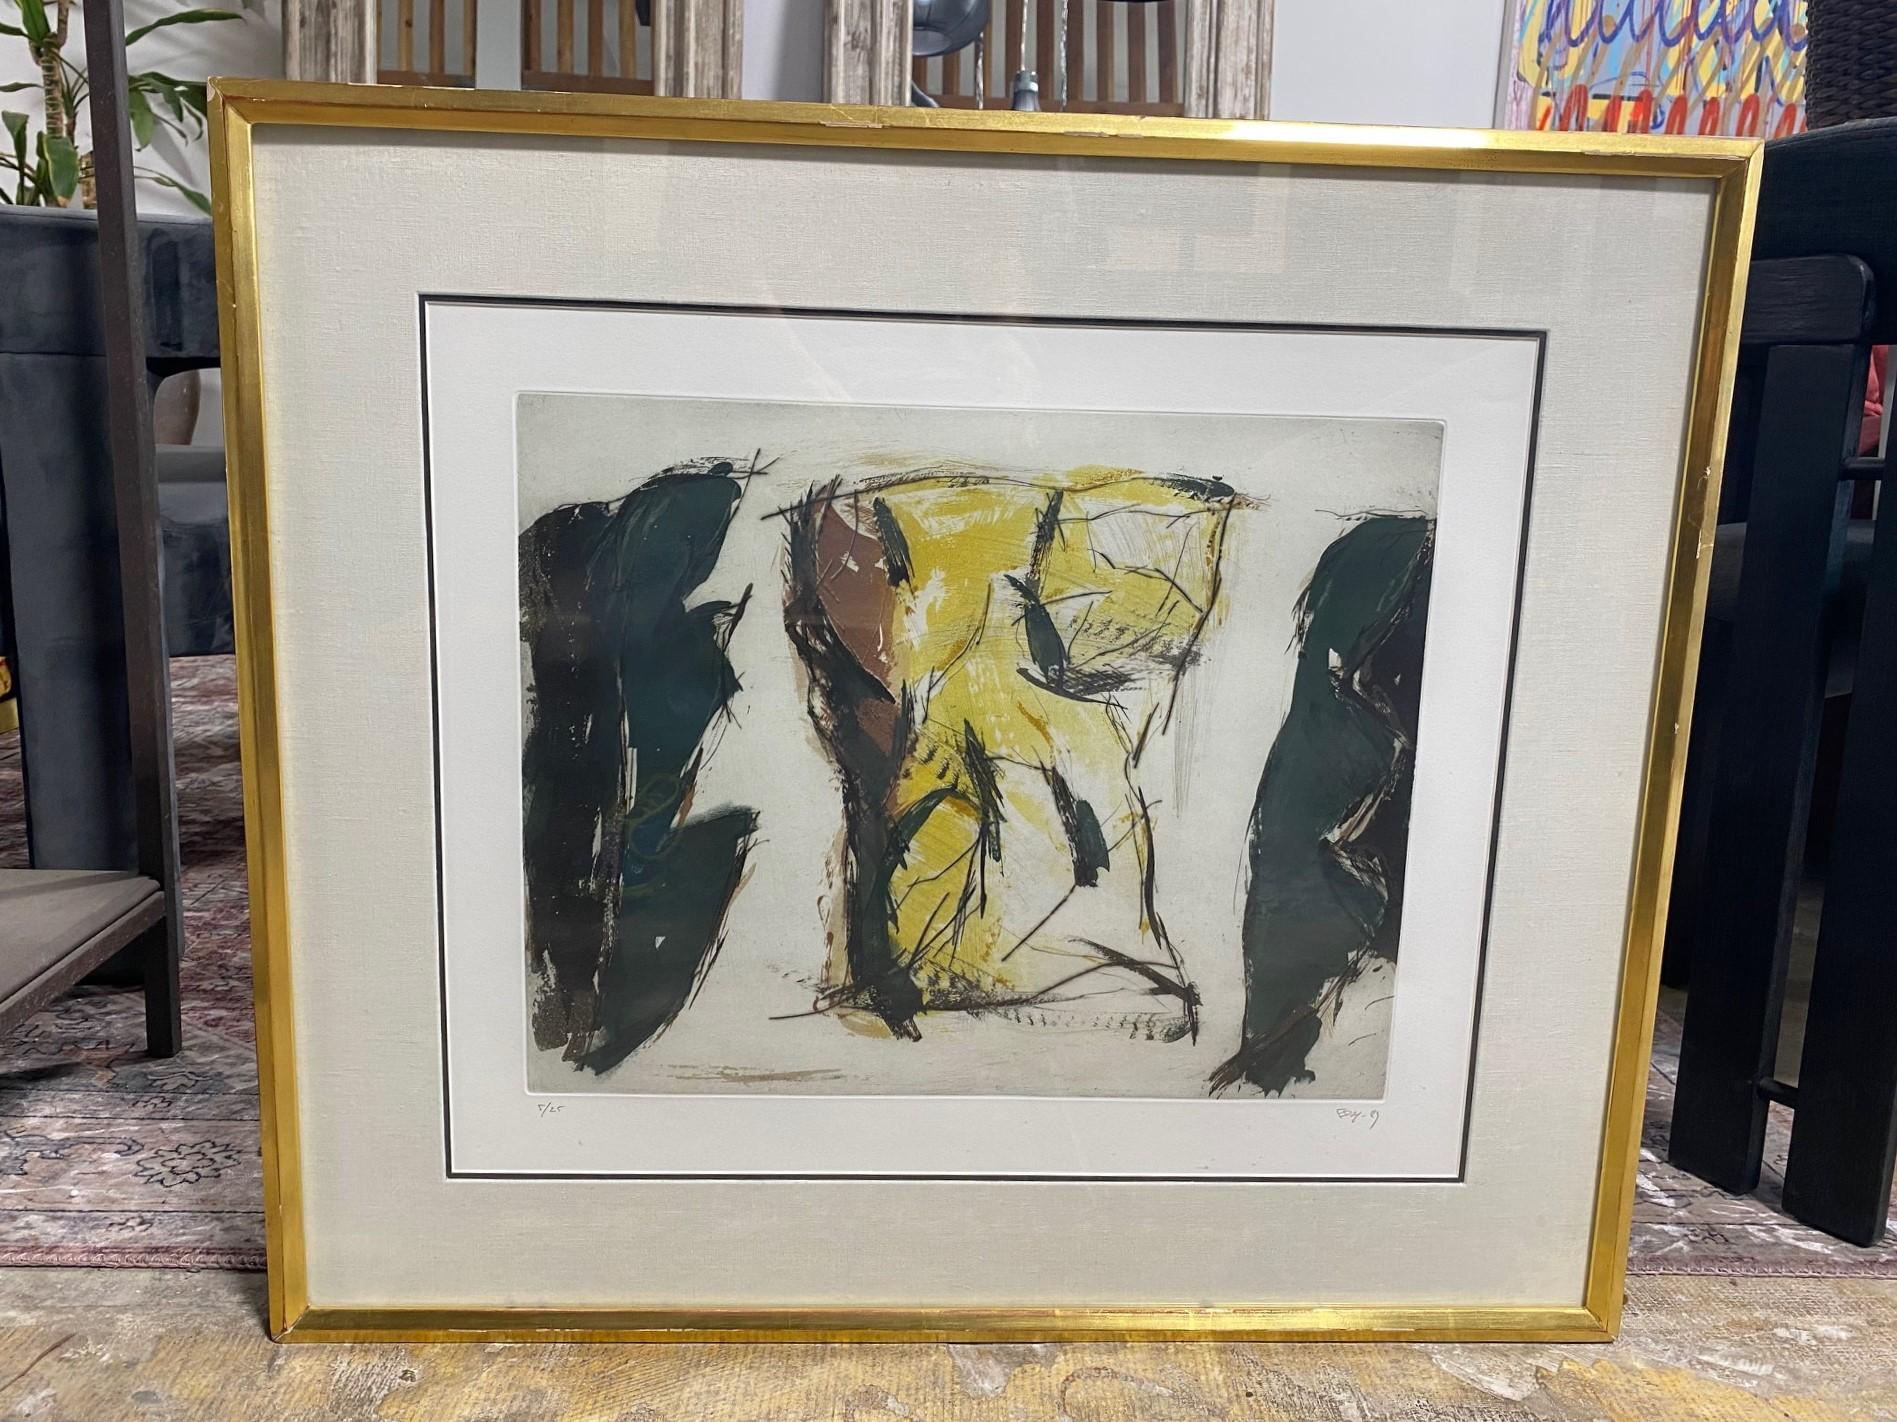 Ein ansprechender moderner abstrakter lithografischer Druck, der einen menschlichen Torso/Körper darzustellen scheint und ein wenig an die abstrakten Werke von Henry Moore erinnert. 

Das Werk ist vom Künstler mit Bleistift signiert, datiert